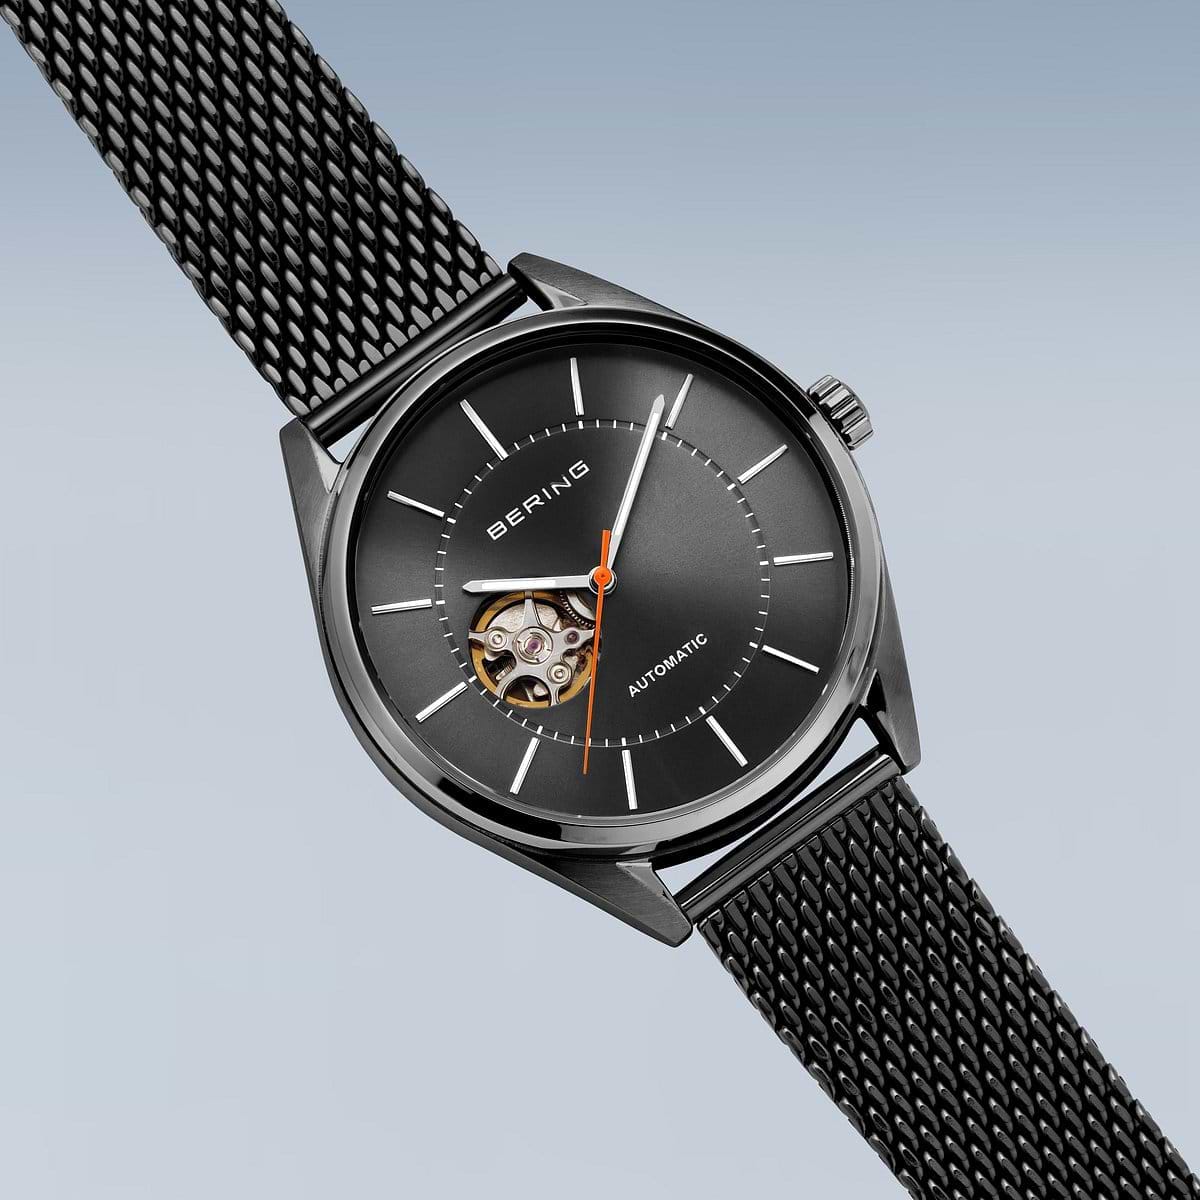 שעון יד לגבר Bering 16743-377 43mm צבע שחור/אוטומטי - אחריות לשנה ע"י היבואן